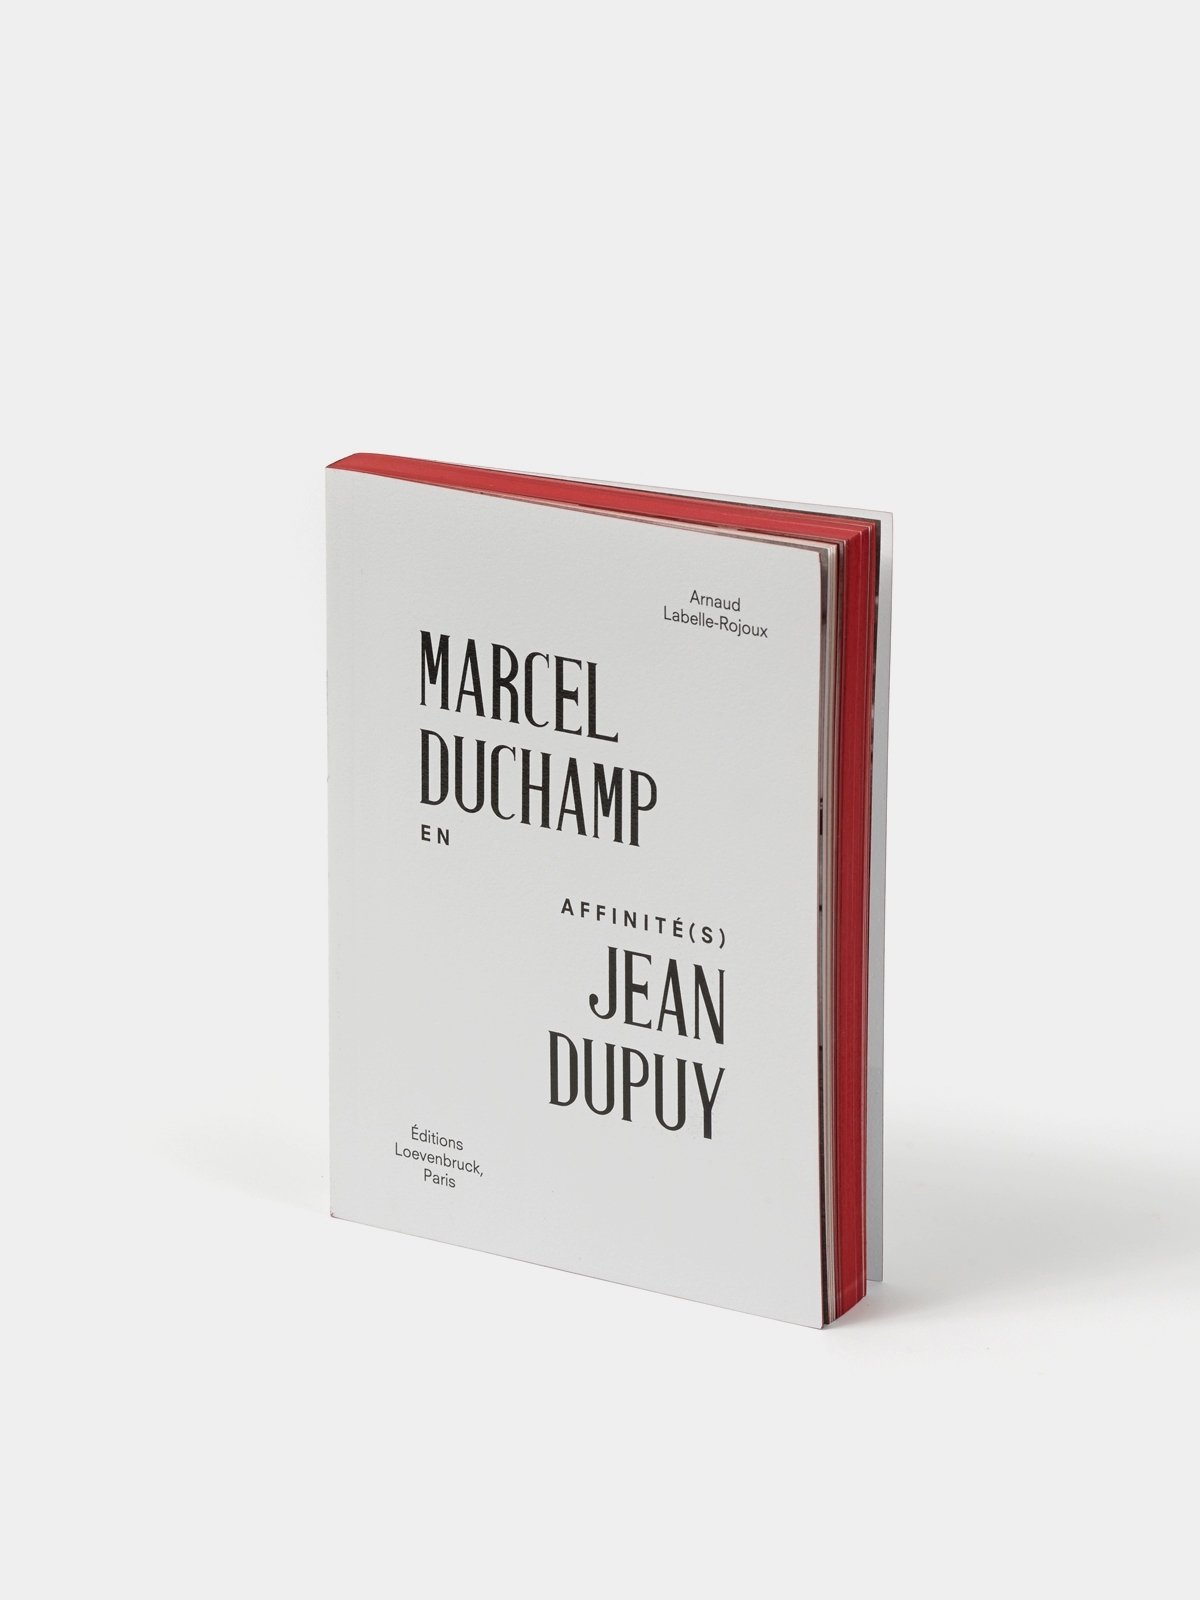 En affinité(s), Marcel Duchamp Jean Dupuy